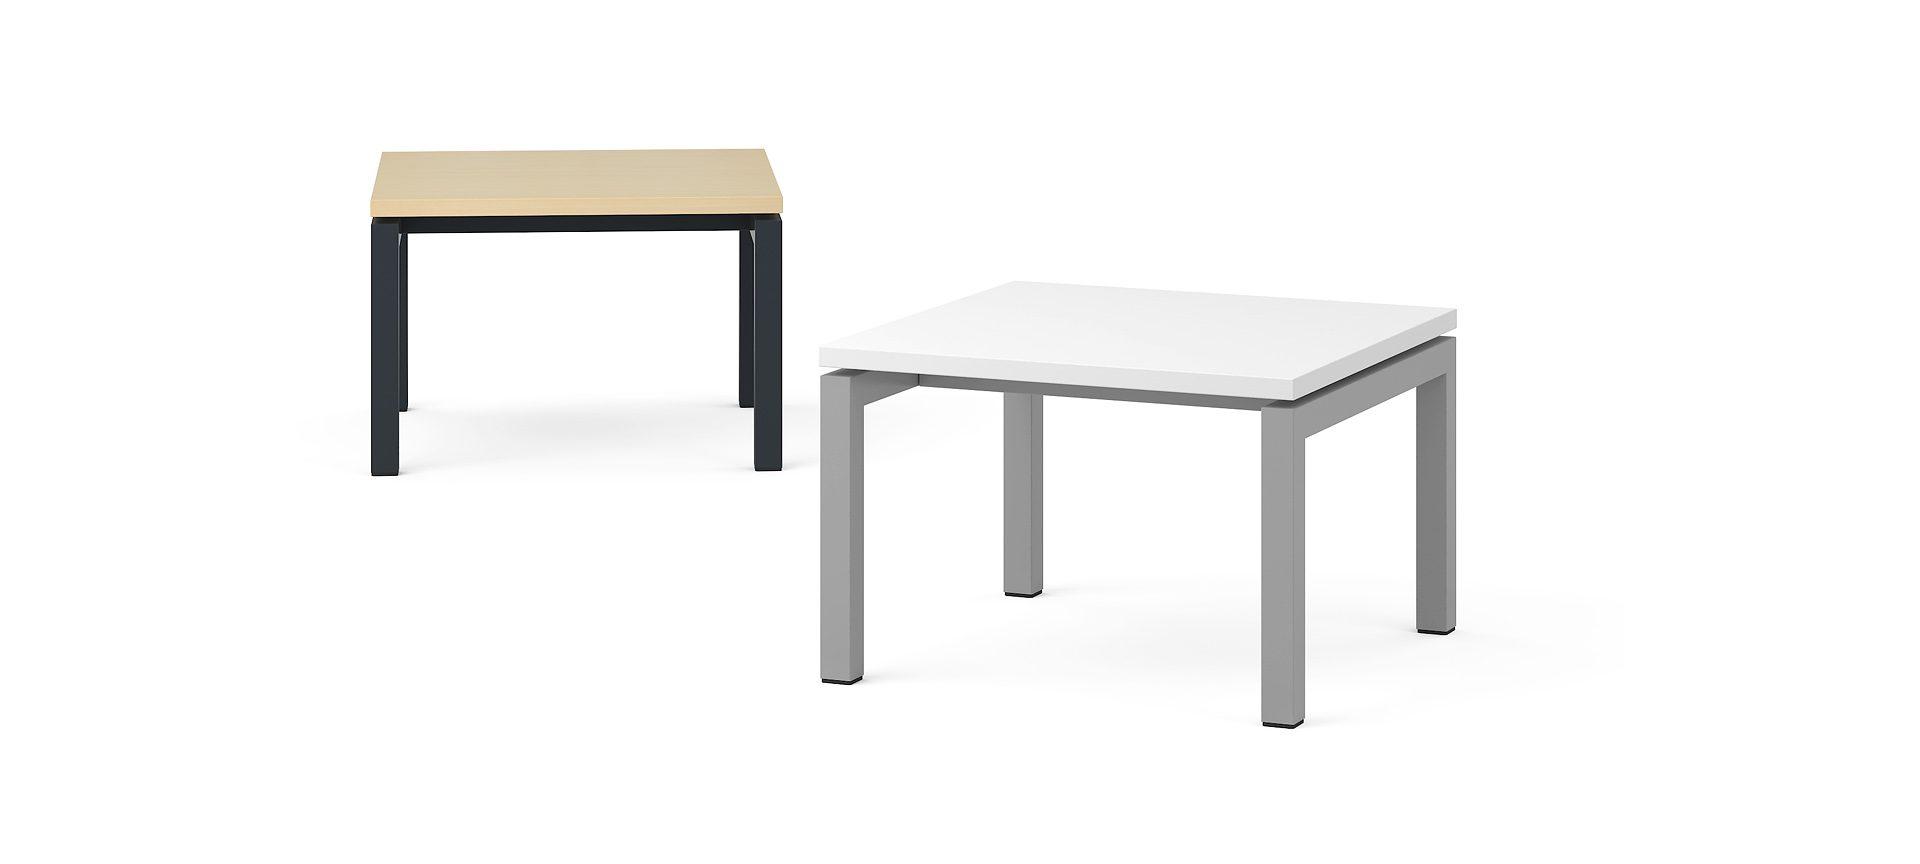 Кофейный столик NOVA, 600x600x400 мм, N2 - Серый кубанит меламин, E - Белая